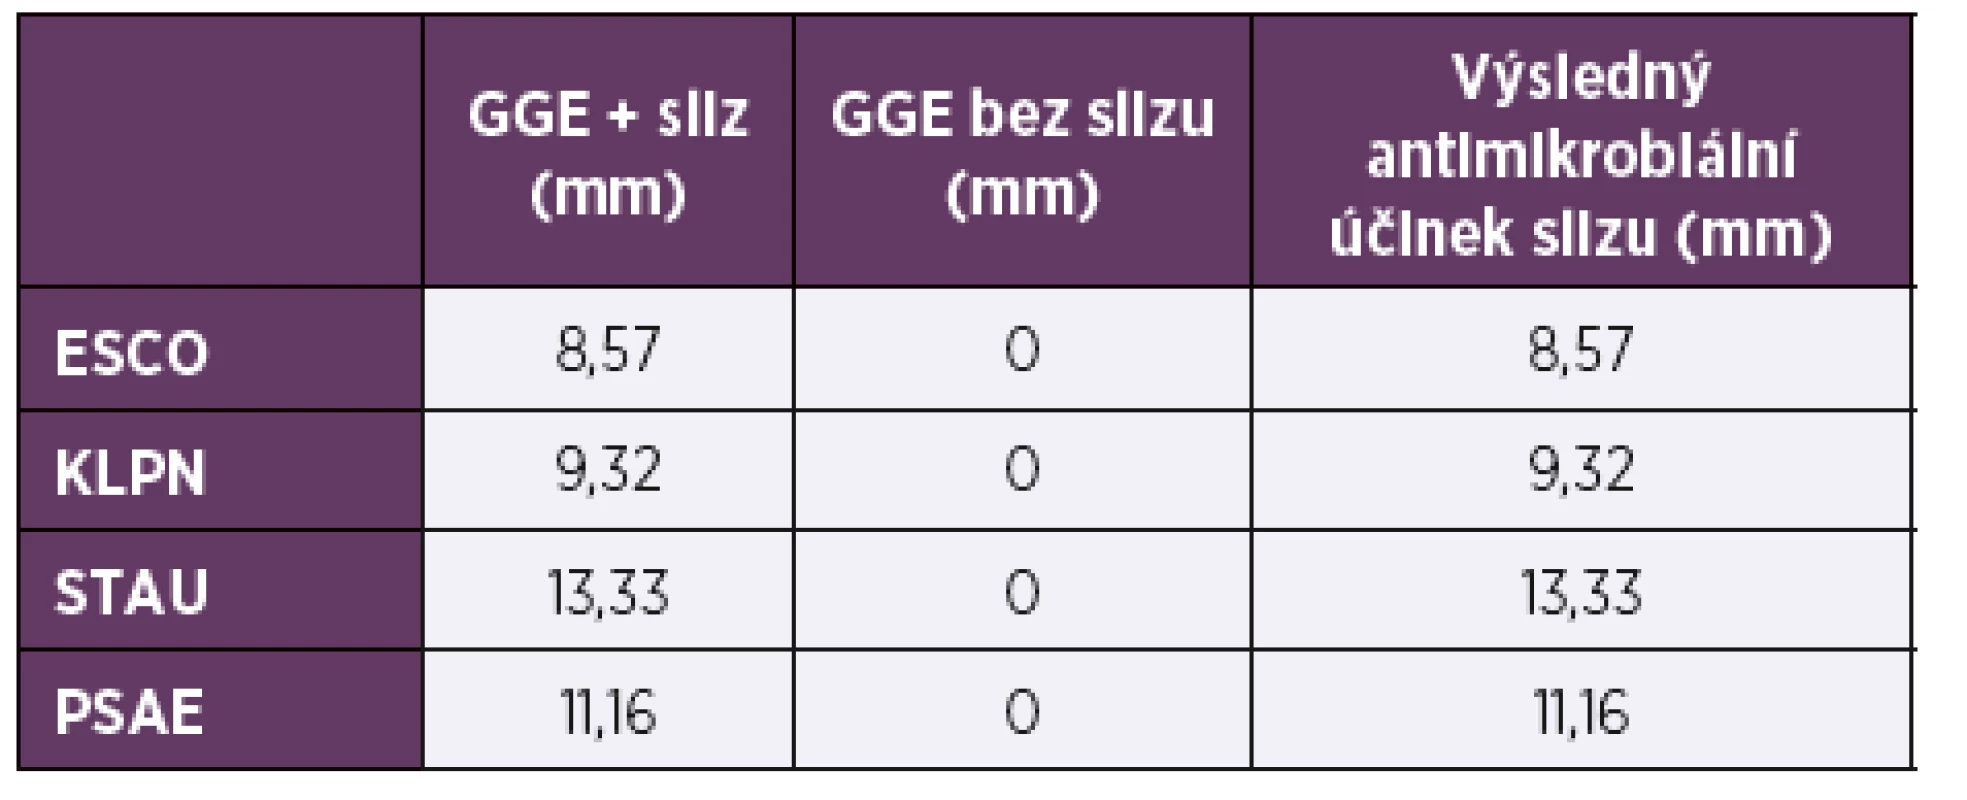 Výsledky stanovení antimikrobiálních účinků slizu
hlemýždě Achatina reticulata<br>
Table 1. Results of antimicrobial activity testing of Achatina reticulata
slime